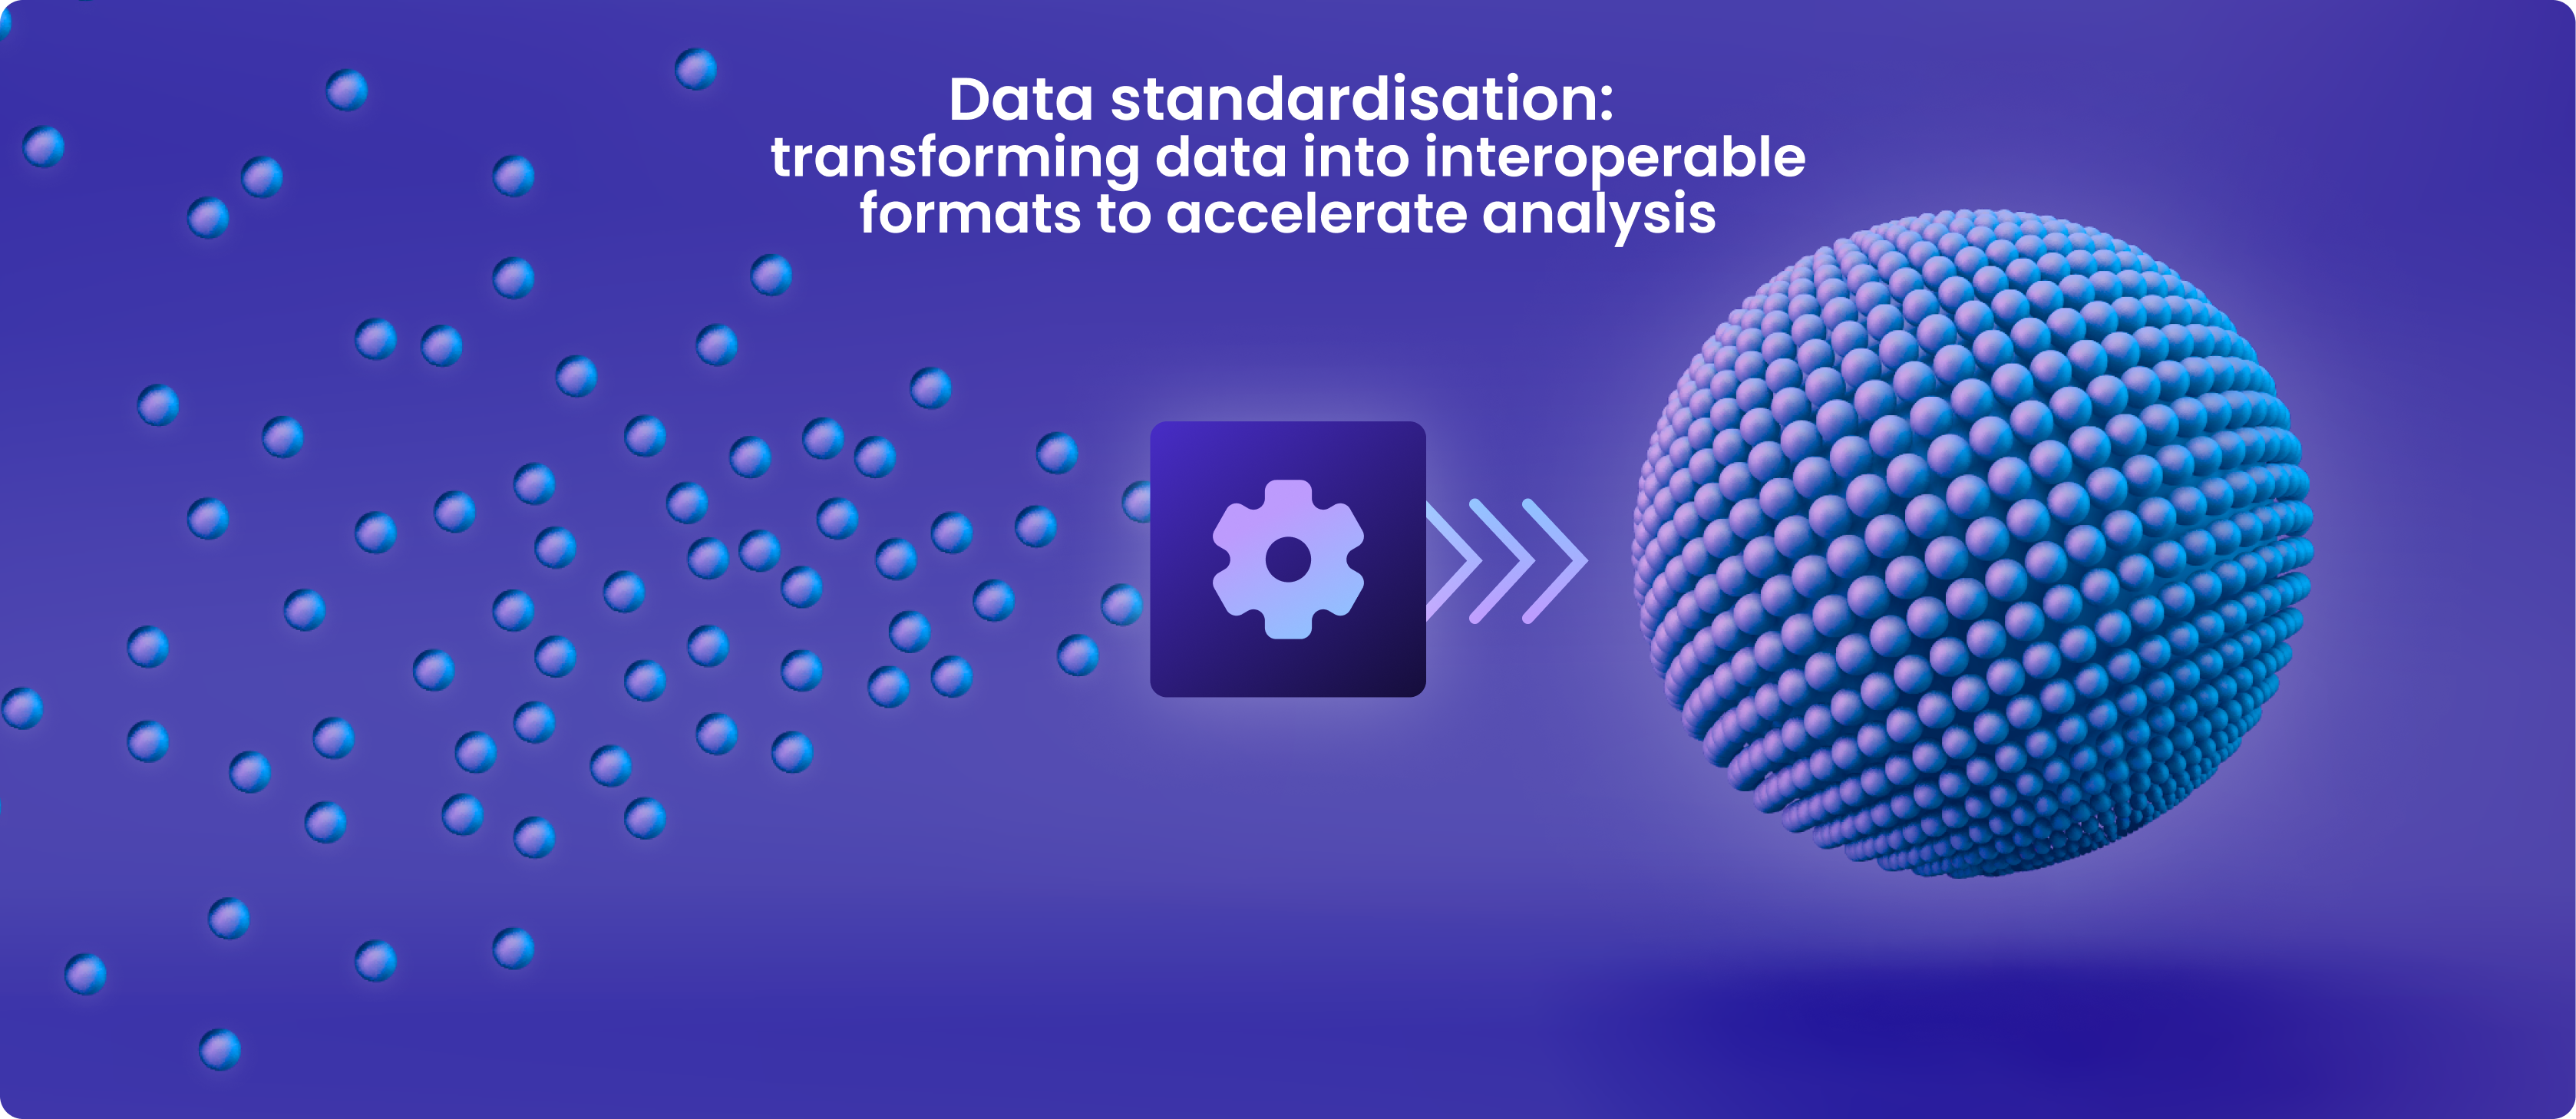 Data_standardisation-1